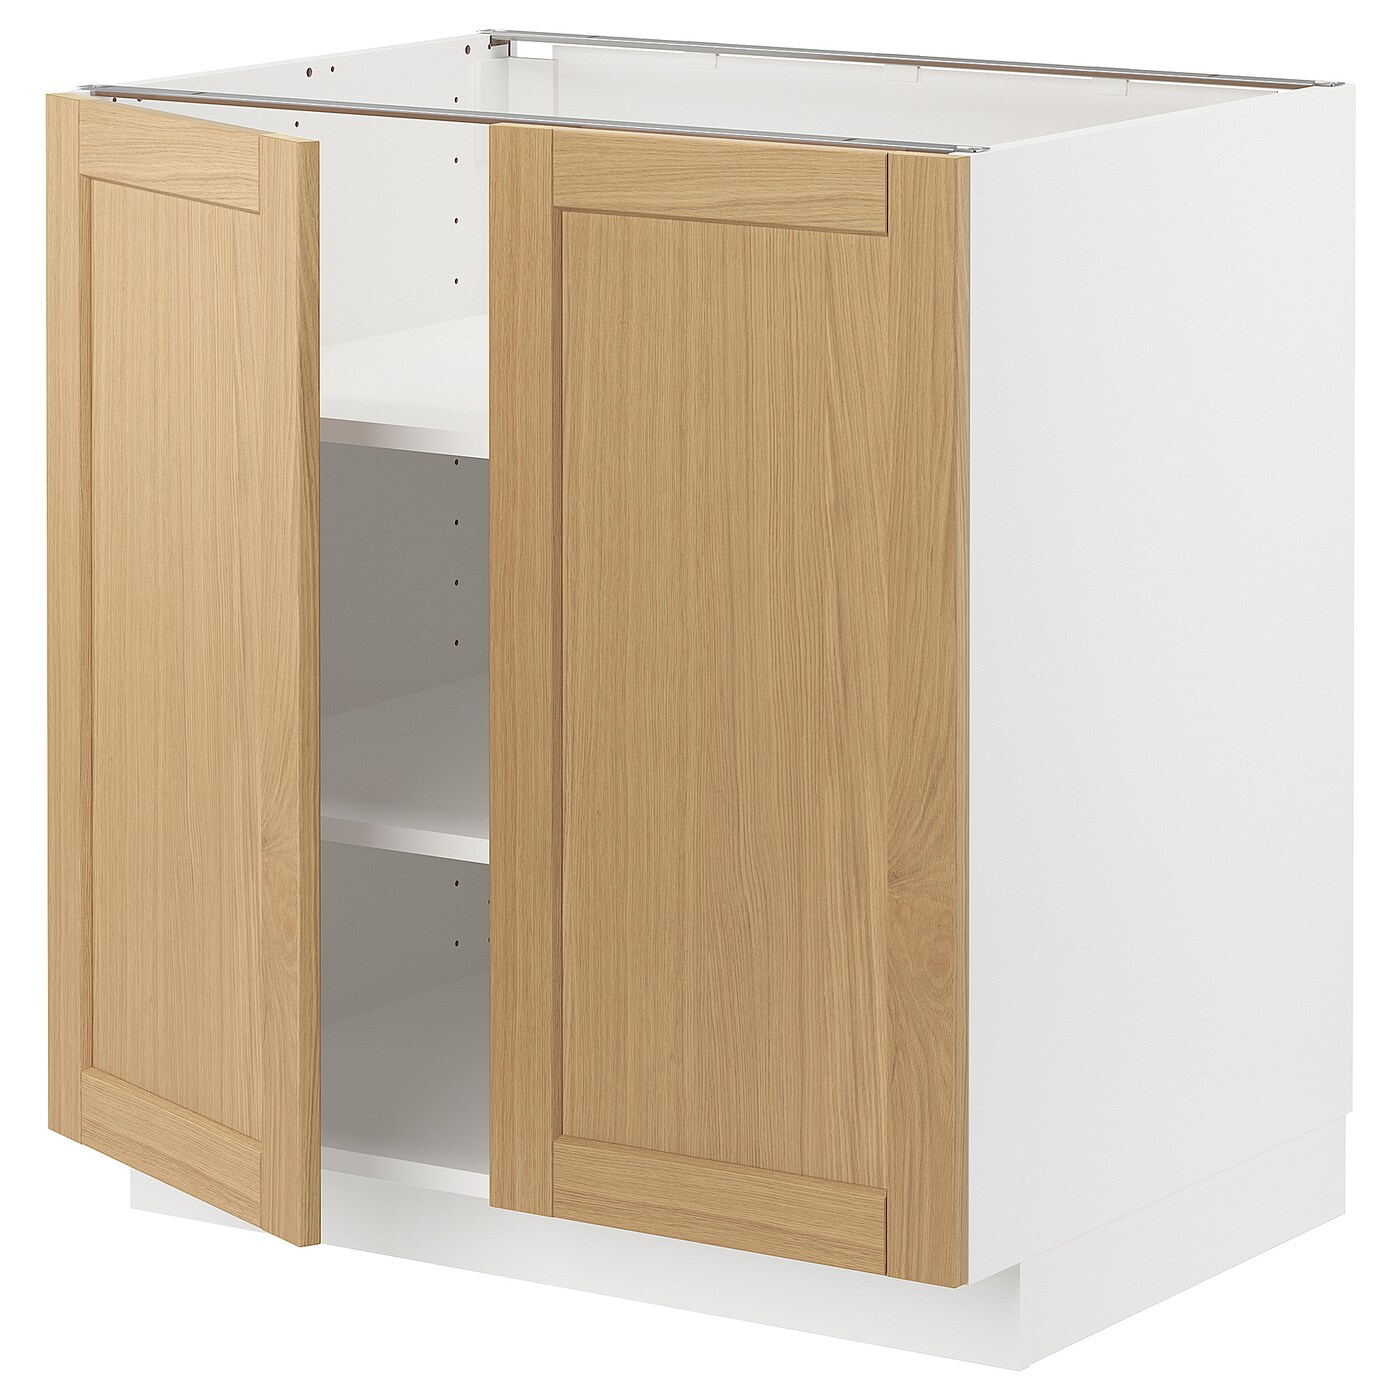 Напольный шкаф - METOD IKEA/ МЕТОД ИКЕА,  60х80 см, белый/под беленый дуб